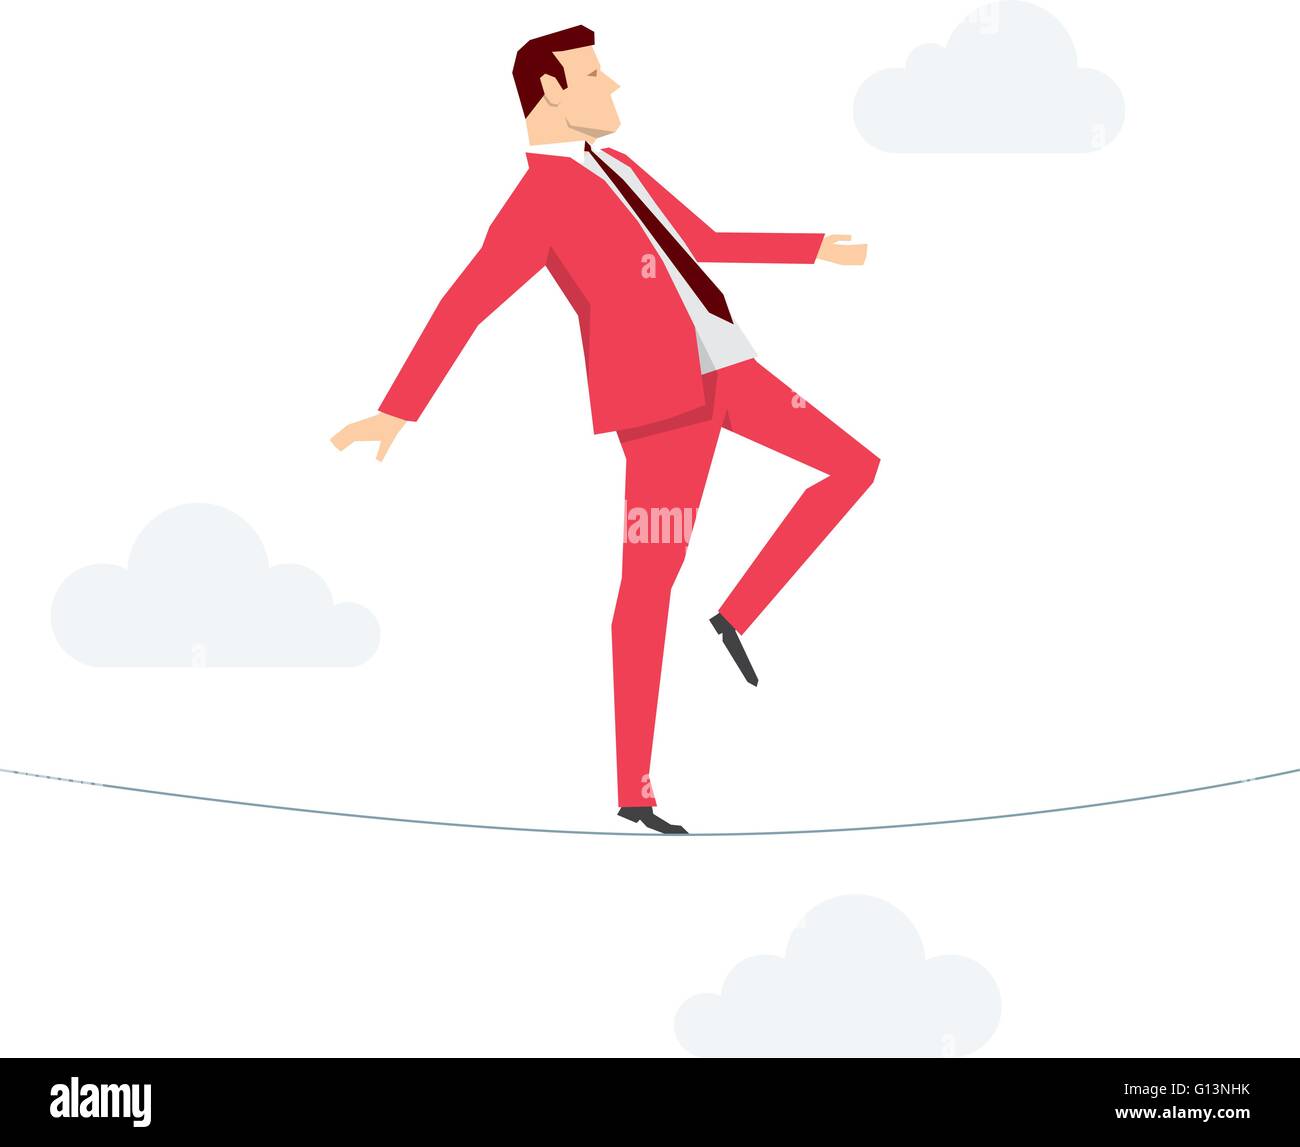 Costume rouge businessman walking sur la corde. Concept illustration vectorielle. Illustration de Vecteur